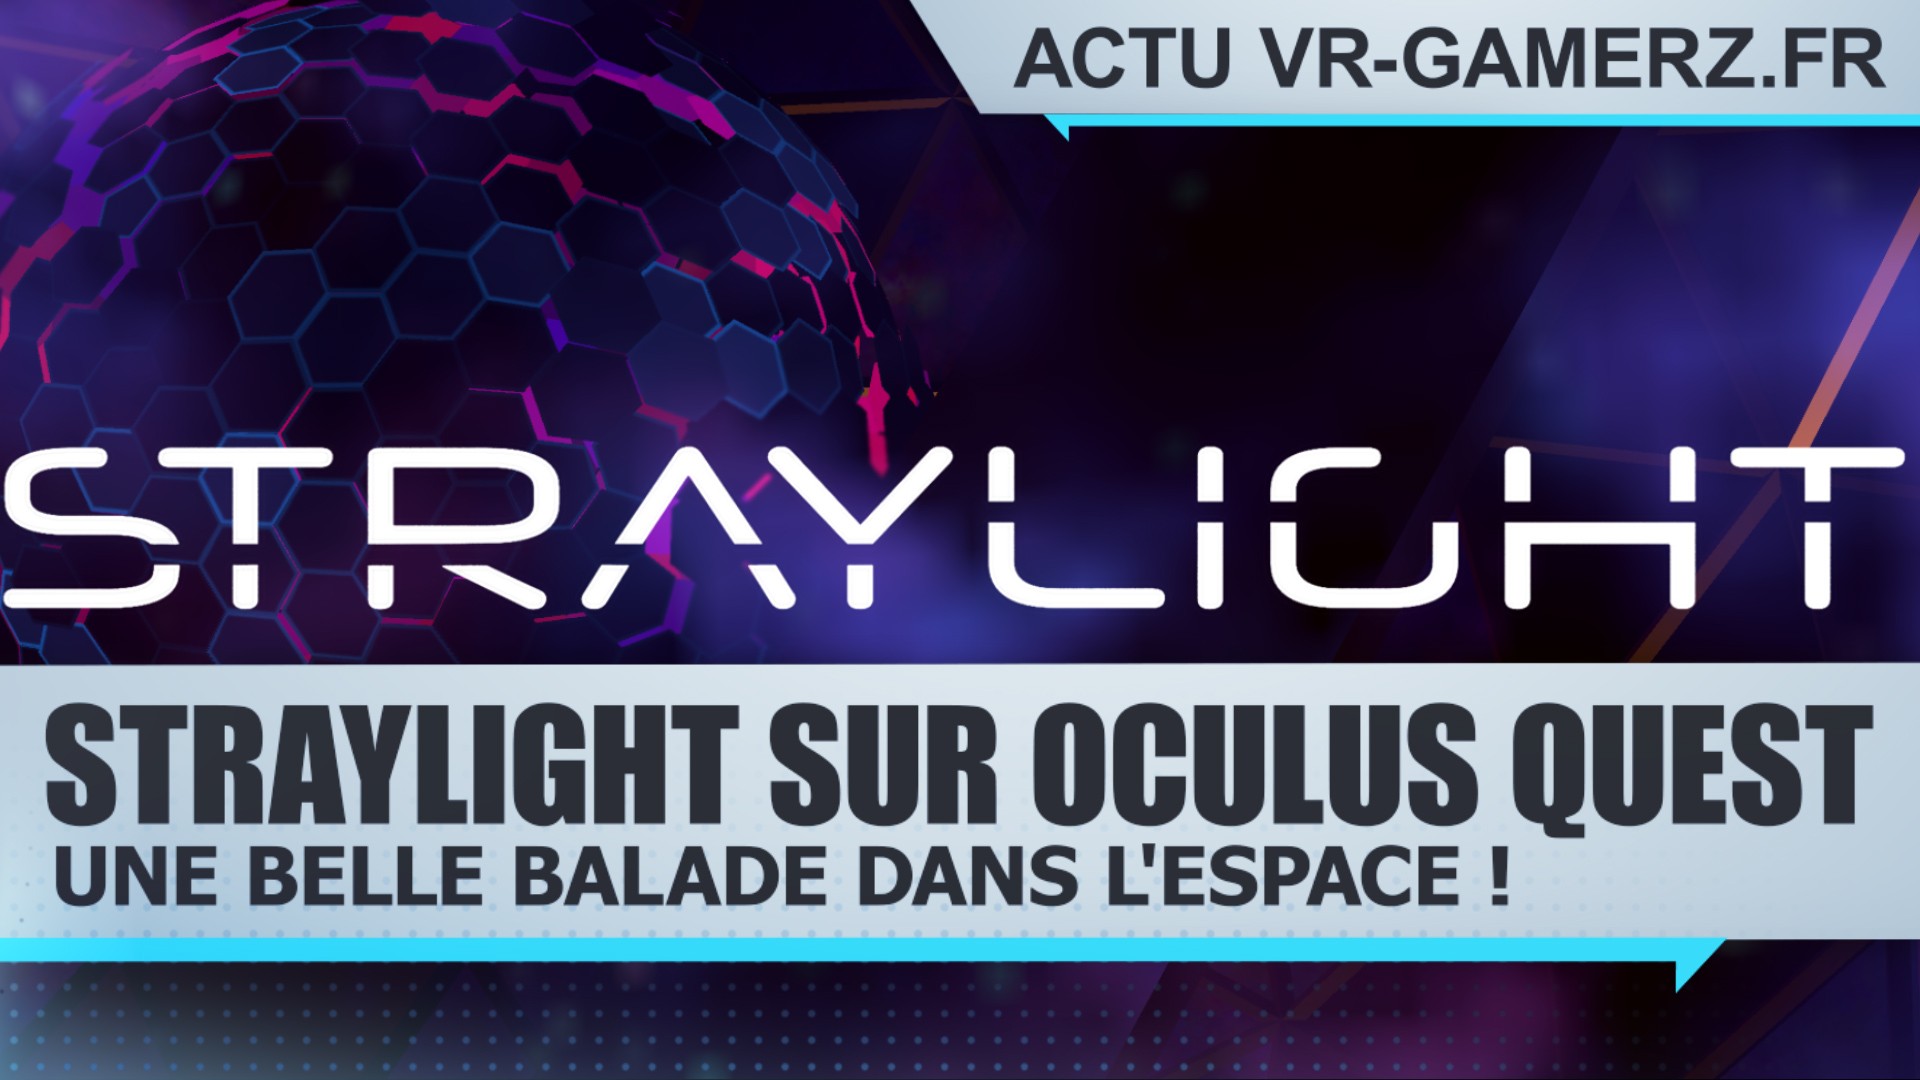 STRAYLIGHT sur Oculus quest : Une belle balade dans l’espace !